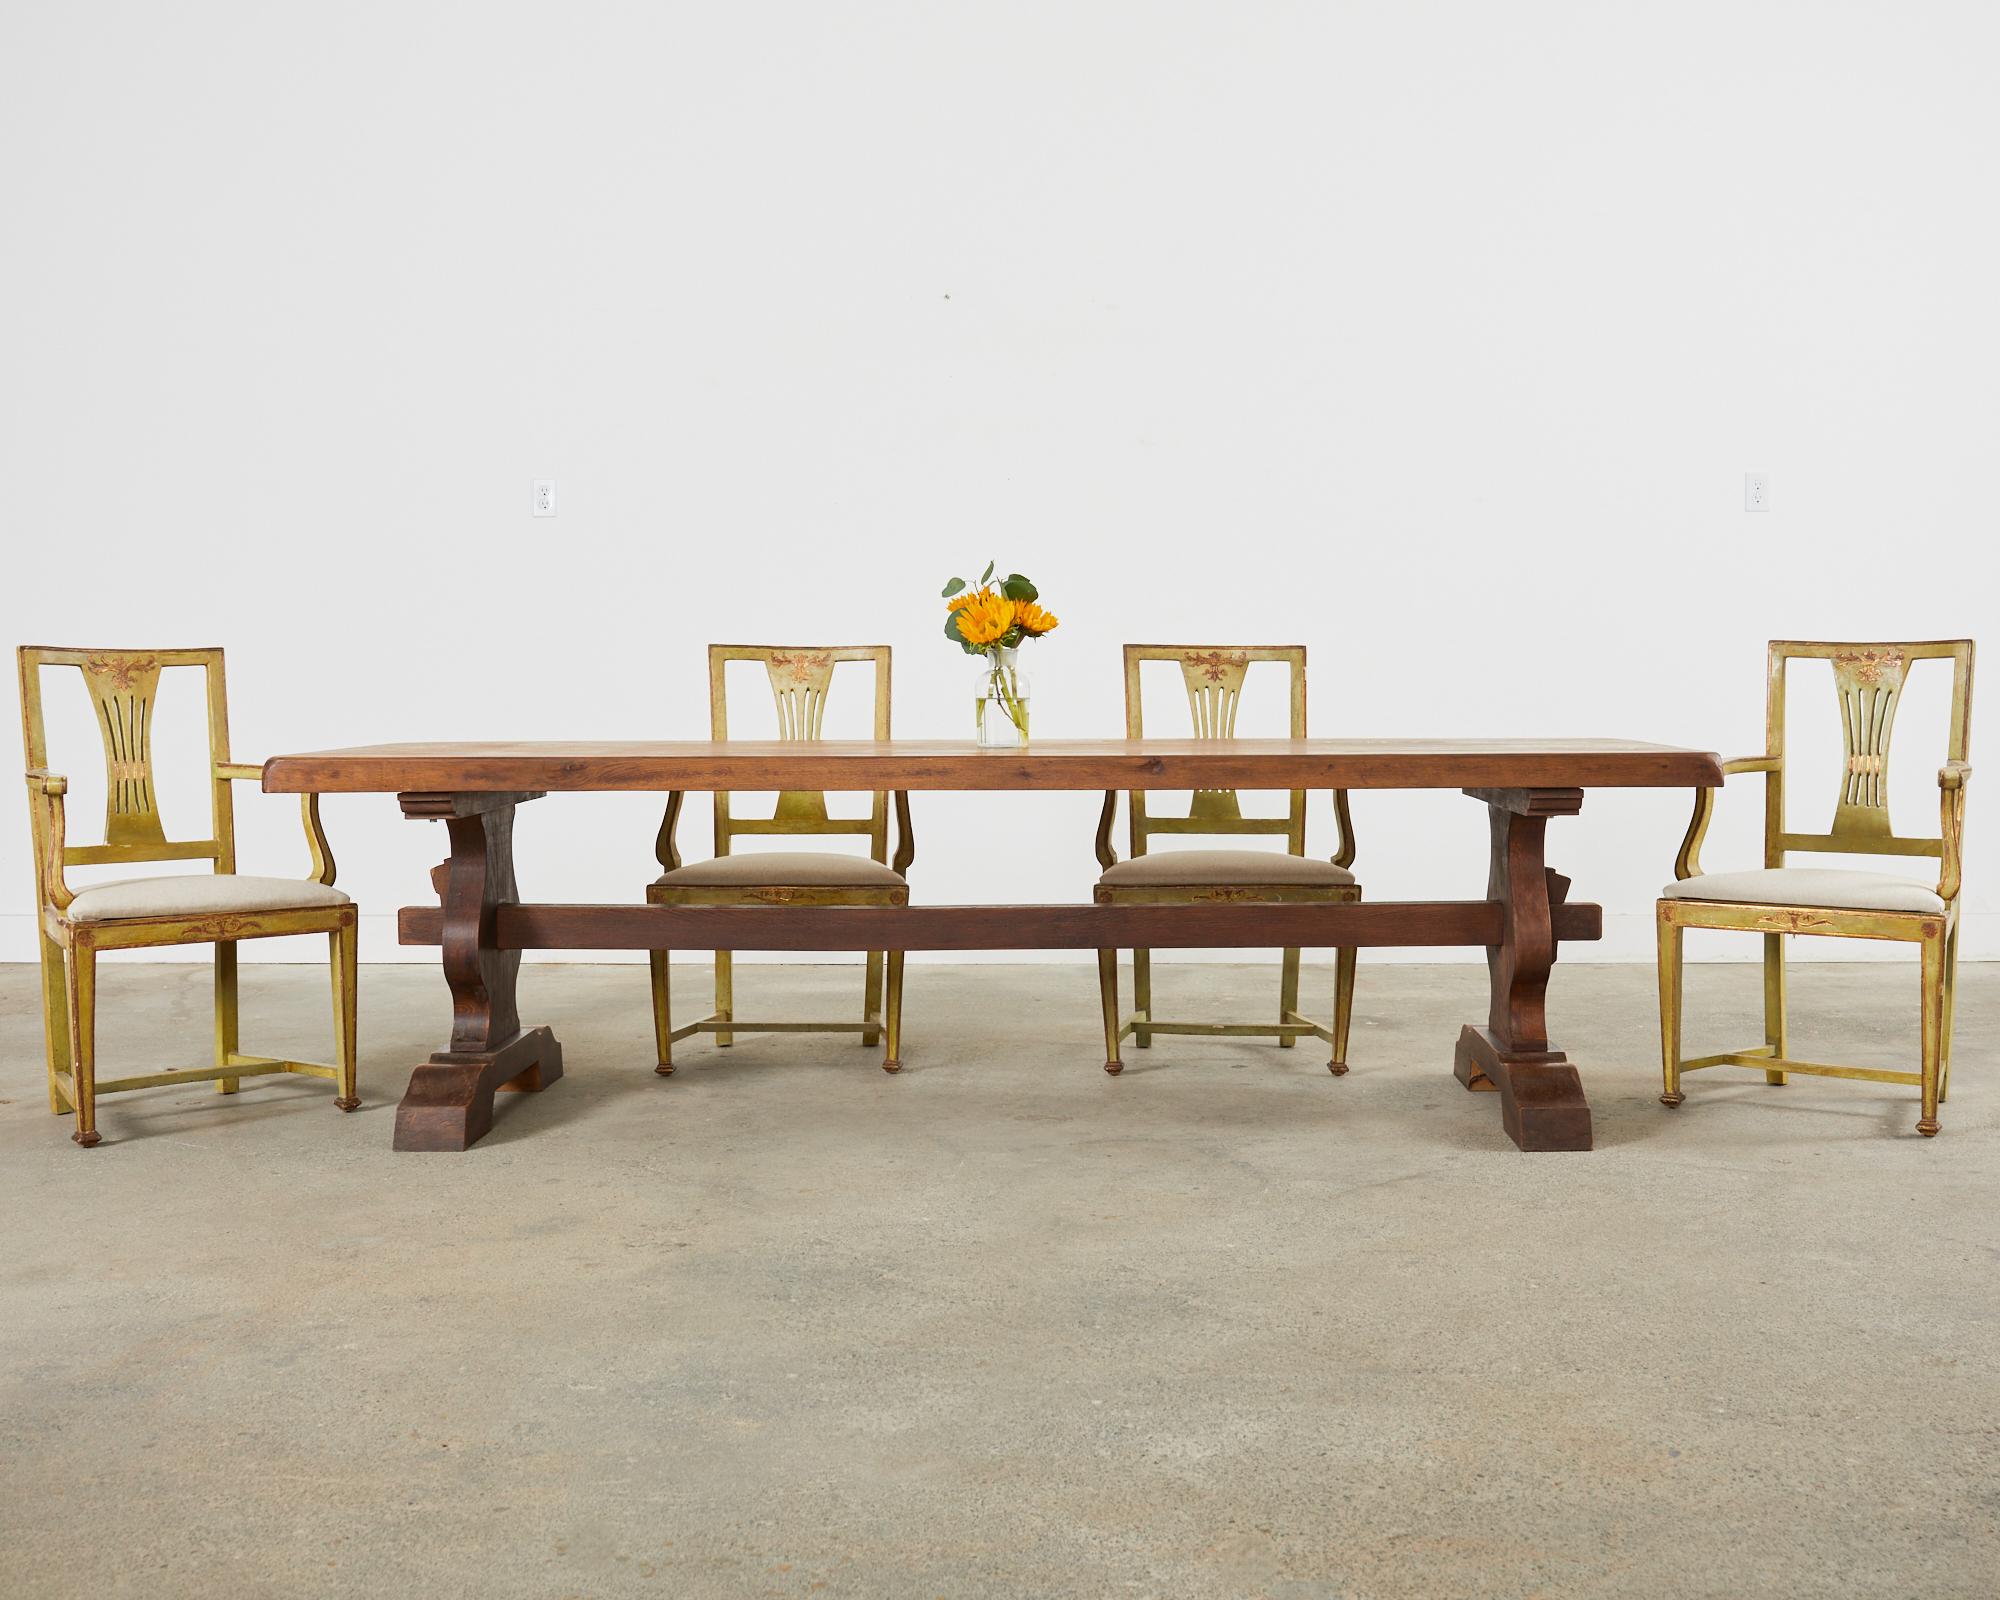 Grande table de salle à manger de ferme provinciale française de la fin du 19e siècle, avec une base à tréteaux. Fabriqué en chêne, le plateau de la table est constitué de planches de bois de 2,5 pouces d'épaisseur. Le plateau est soutenu par des